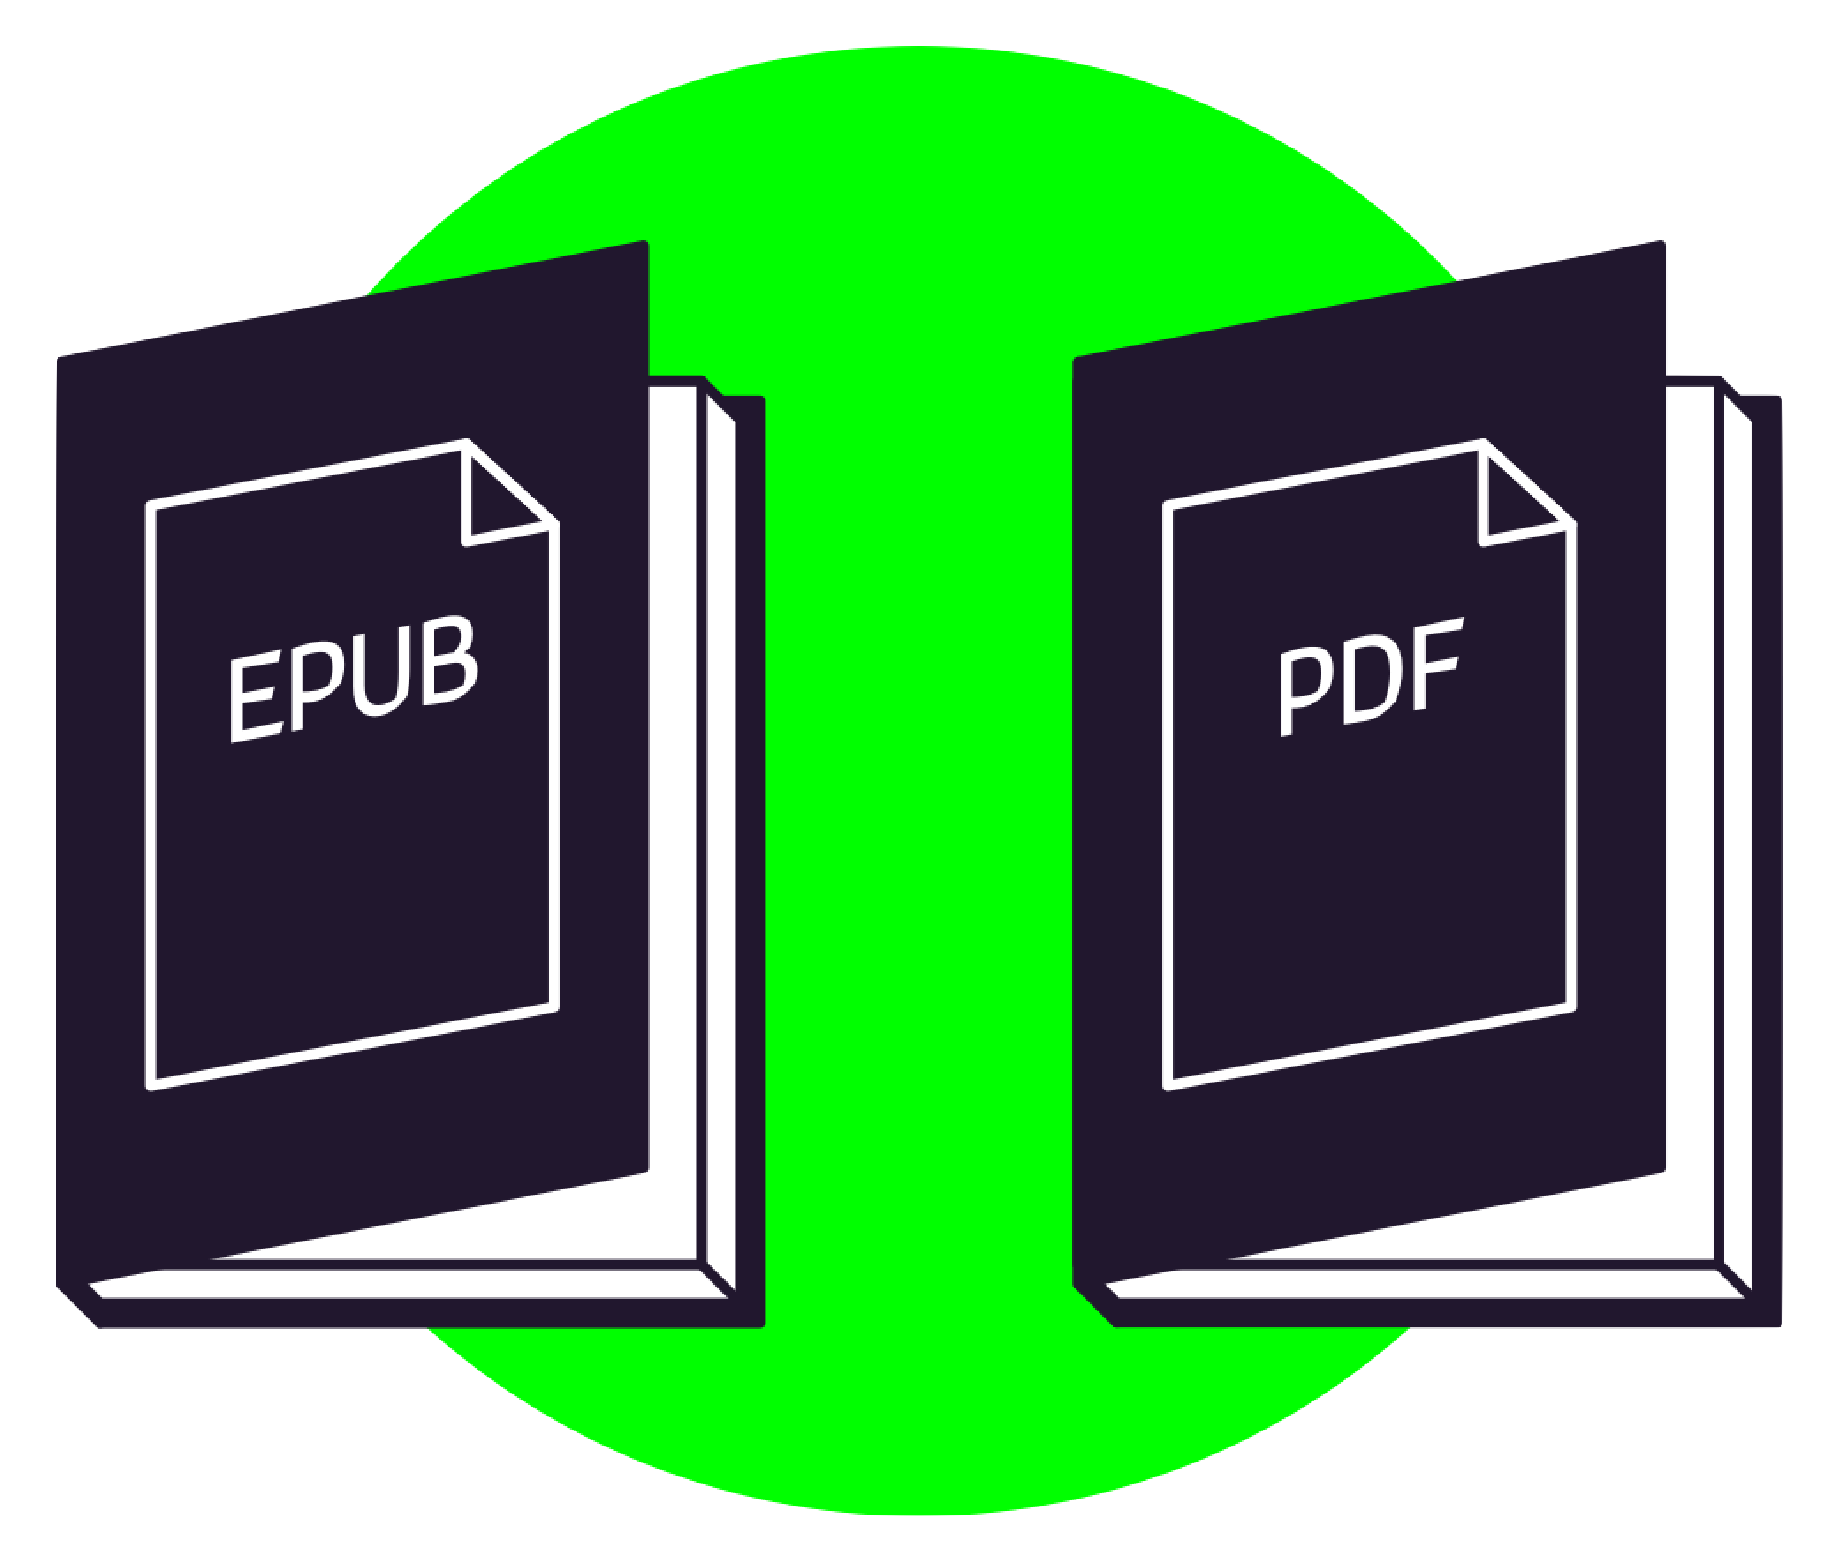 A decorative image of an EPUB file and a PDF file